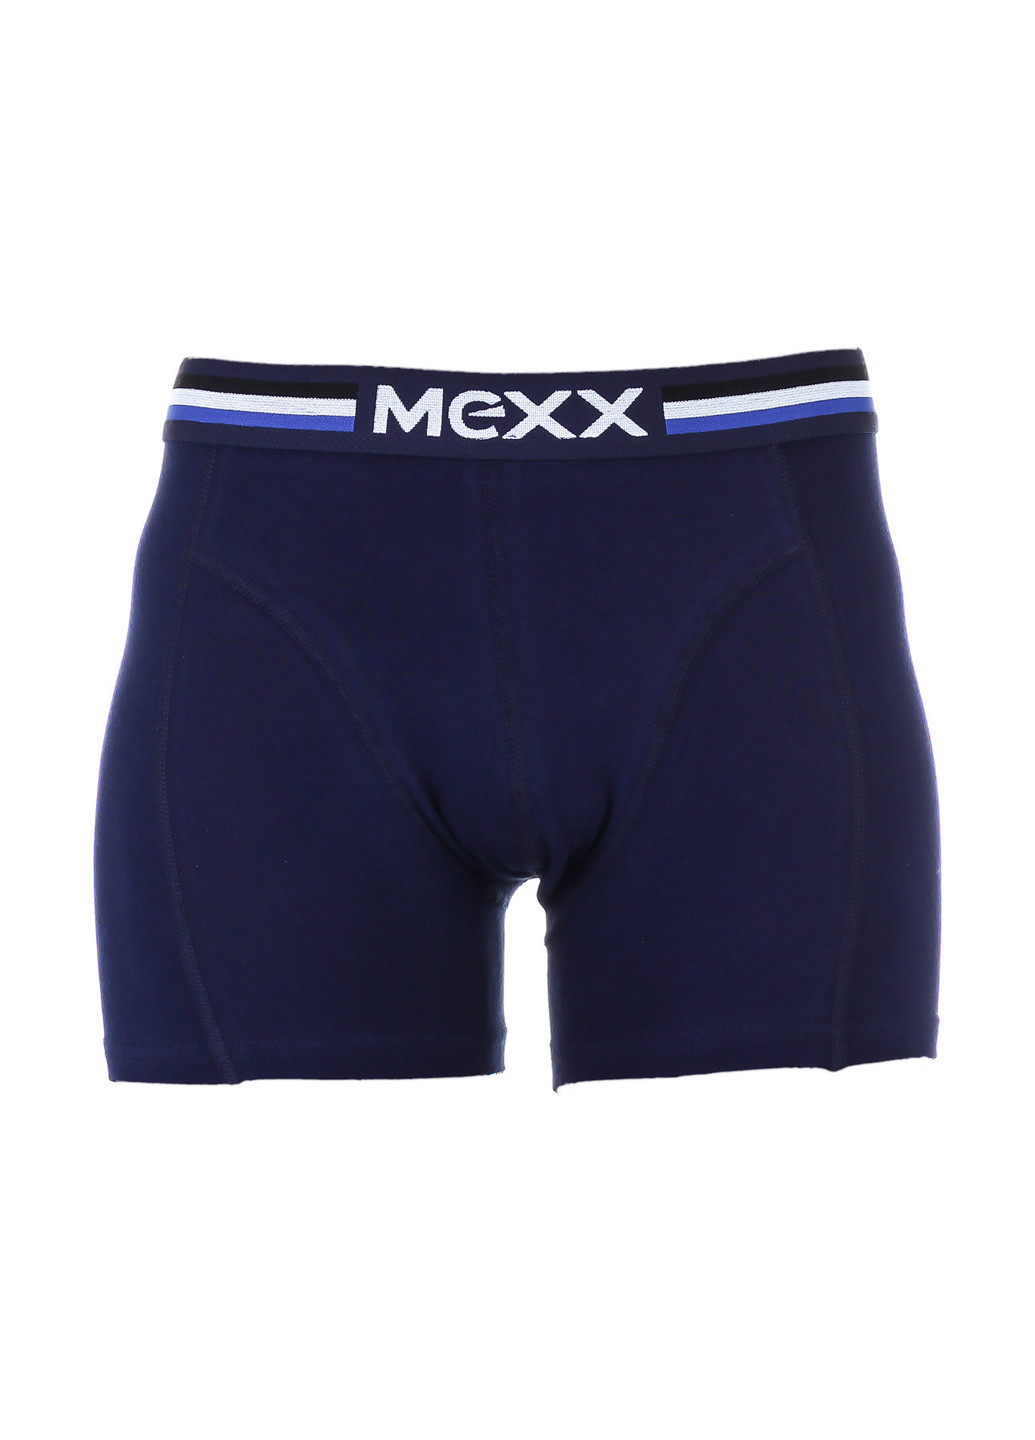 Трусы Mexx боксеры логотипы тёмно-синие повседневные